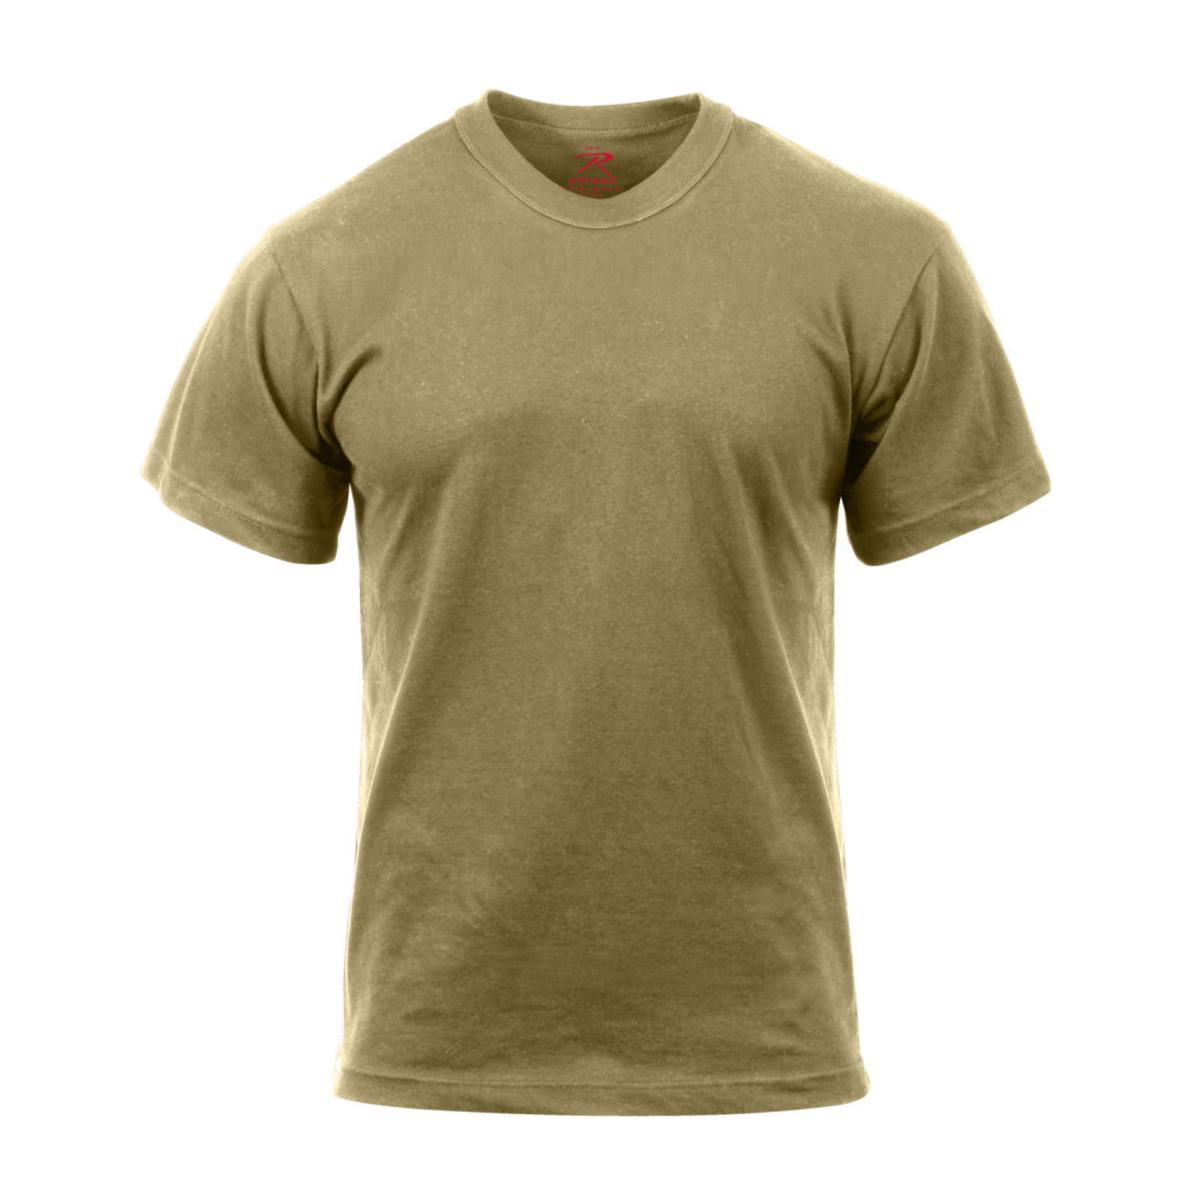 Coyote Brown AR règlement de 670-1 T-shirt-coton armée américaine conforme tee shirt 